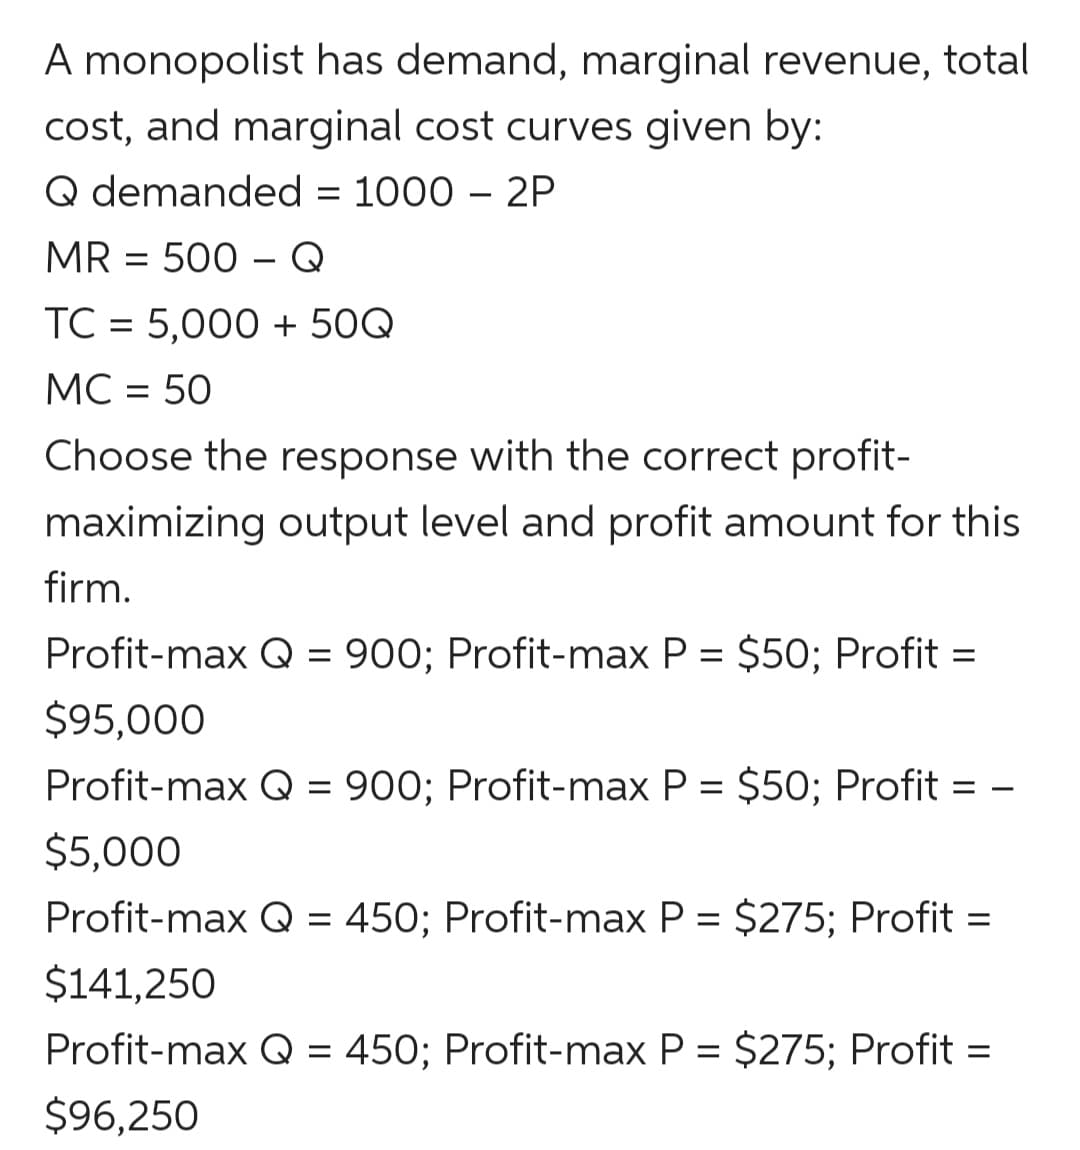 A monopolist has demand, marginal revenue, total
cost, and marginal cost curves given by:
Q demanded = 1000 – 2P
MR = 500 – Q
TC = 5,000 + 50Q
MC = 50
Choose the response with the correct profit-
maximizing output level and profit amount for this
firm.
Profit-max Q = 900; Profit-max P = $50; Profit =
$95,000
Profit-max Q = 900; Profit-max P = $50; Profit = -
$5,000
Profit-max Q = 450; Profit-max P = $275; Profit =
$141,250
Profit-max Q = 450; Profit-max P = $275; Profit =
$96,250
